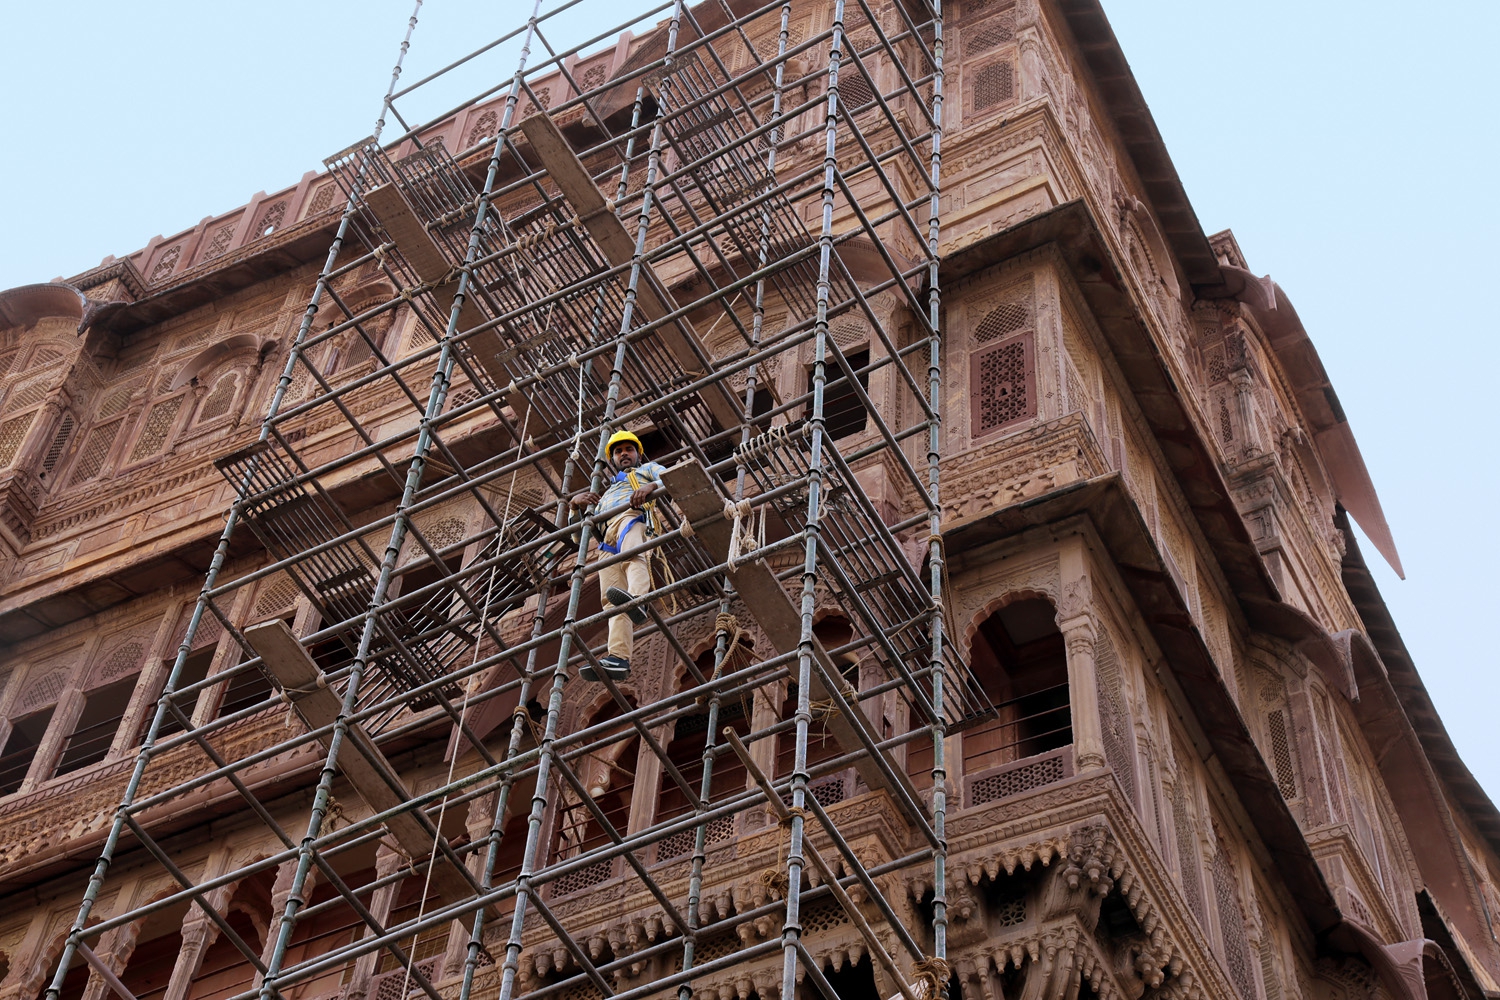 bill-hocker-under-renovation-mehranghar-fort-jodhpur-india-2018